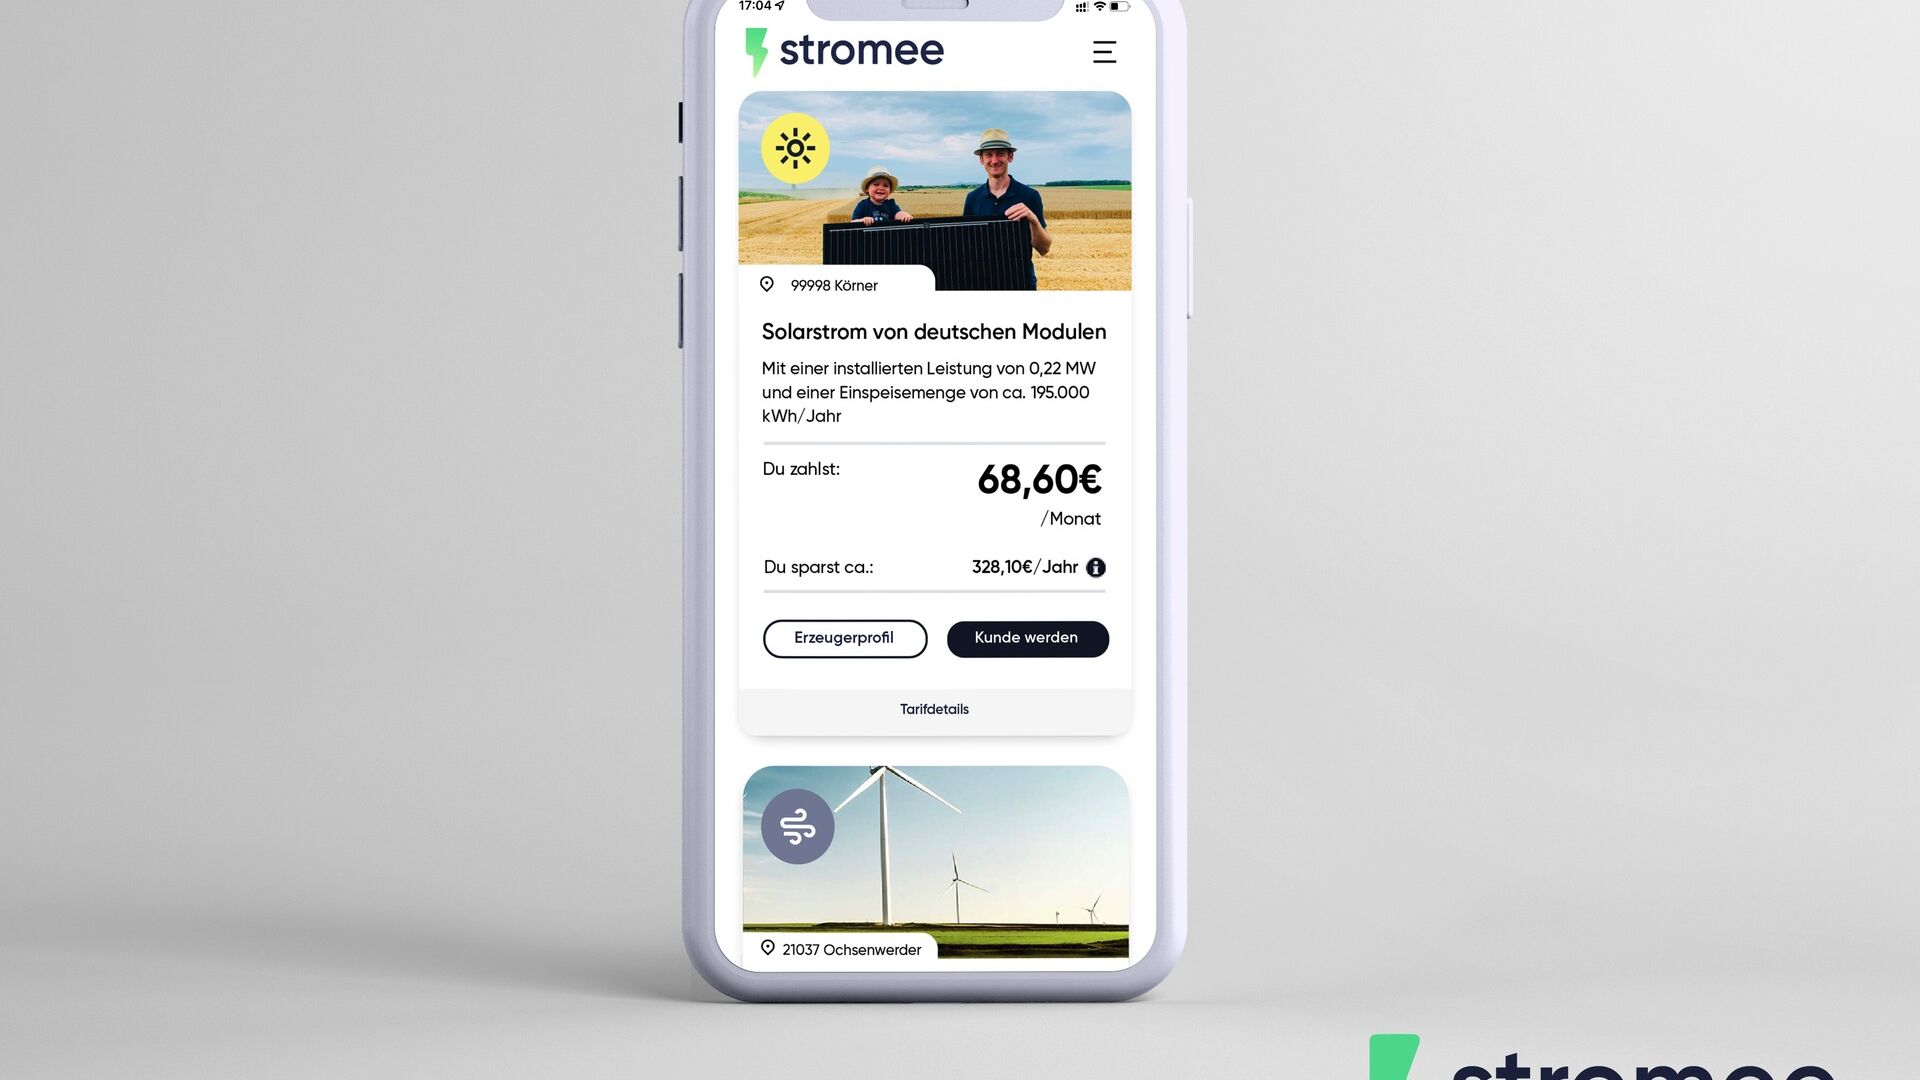 Allemagne : L'application de l'entreprise Stromee sur smartphone